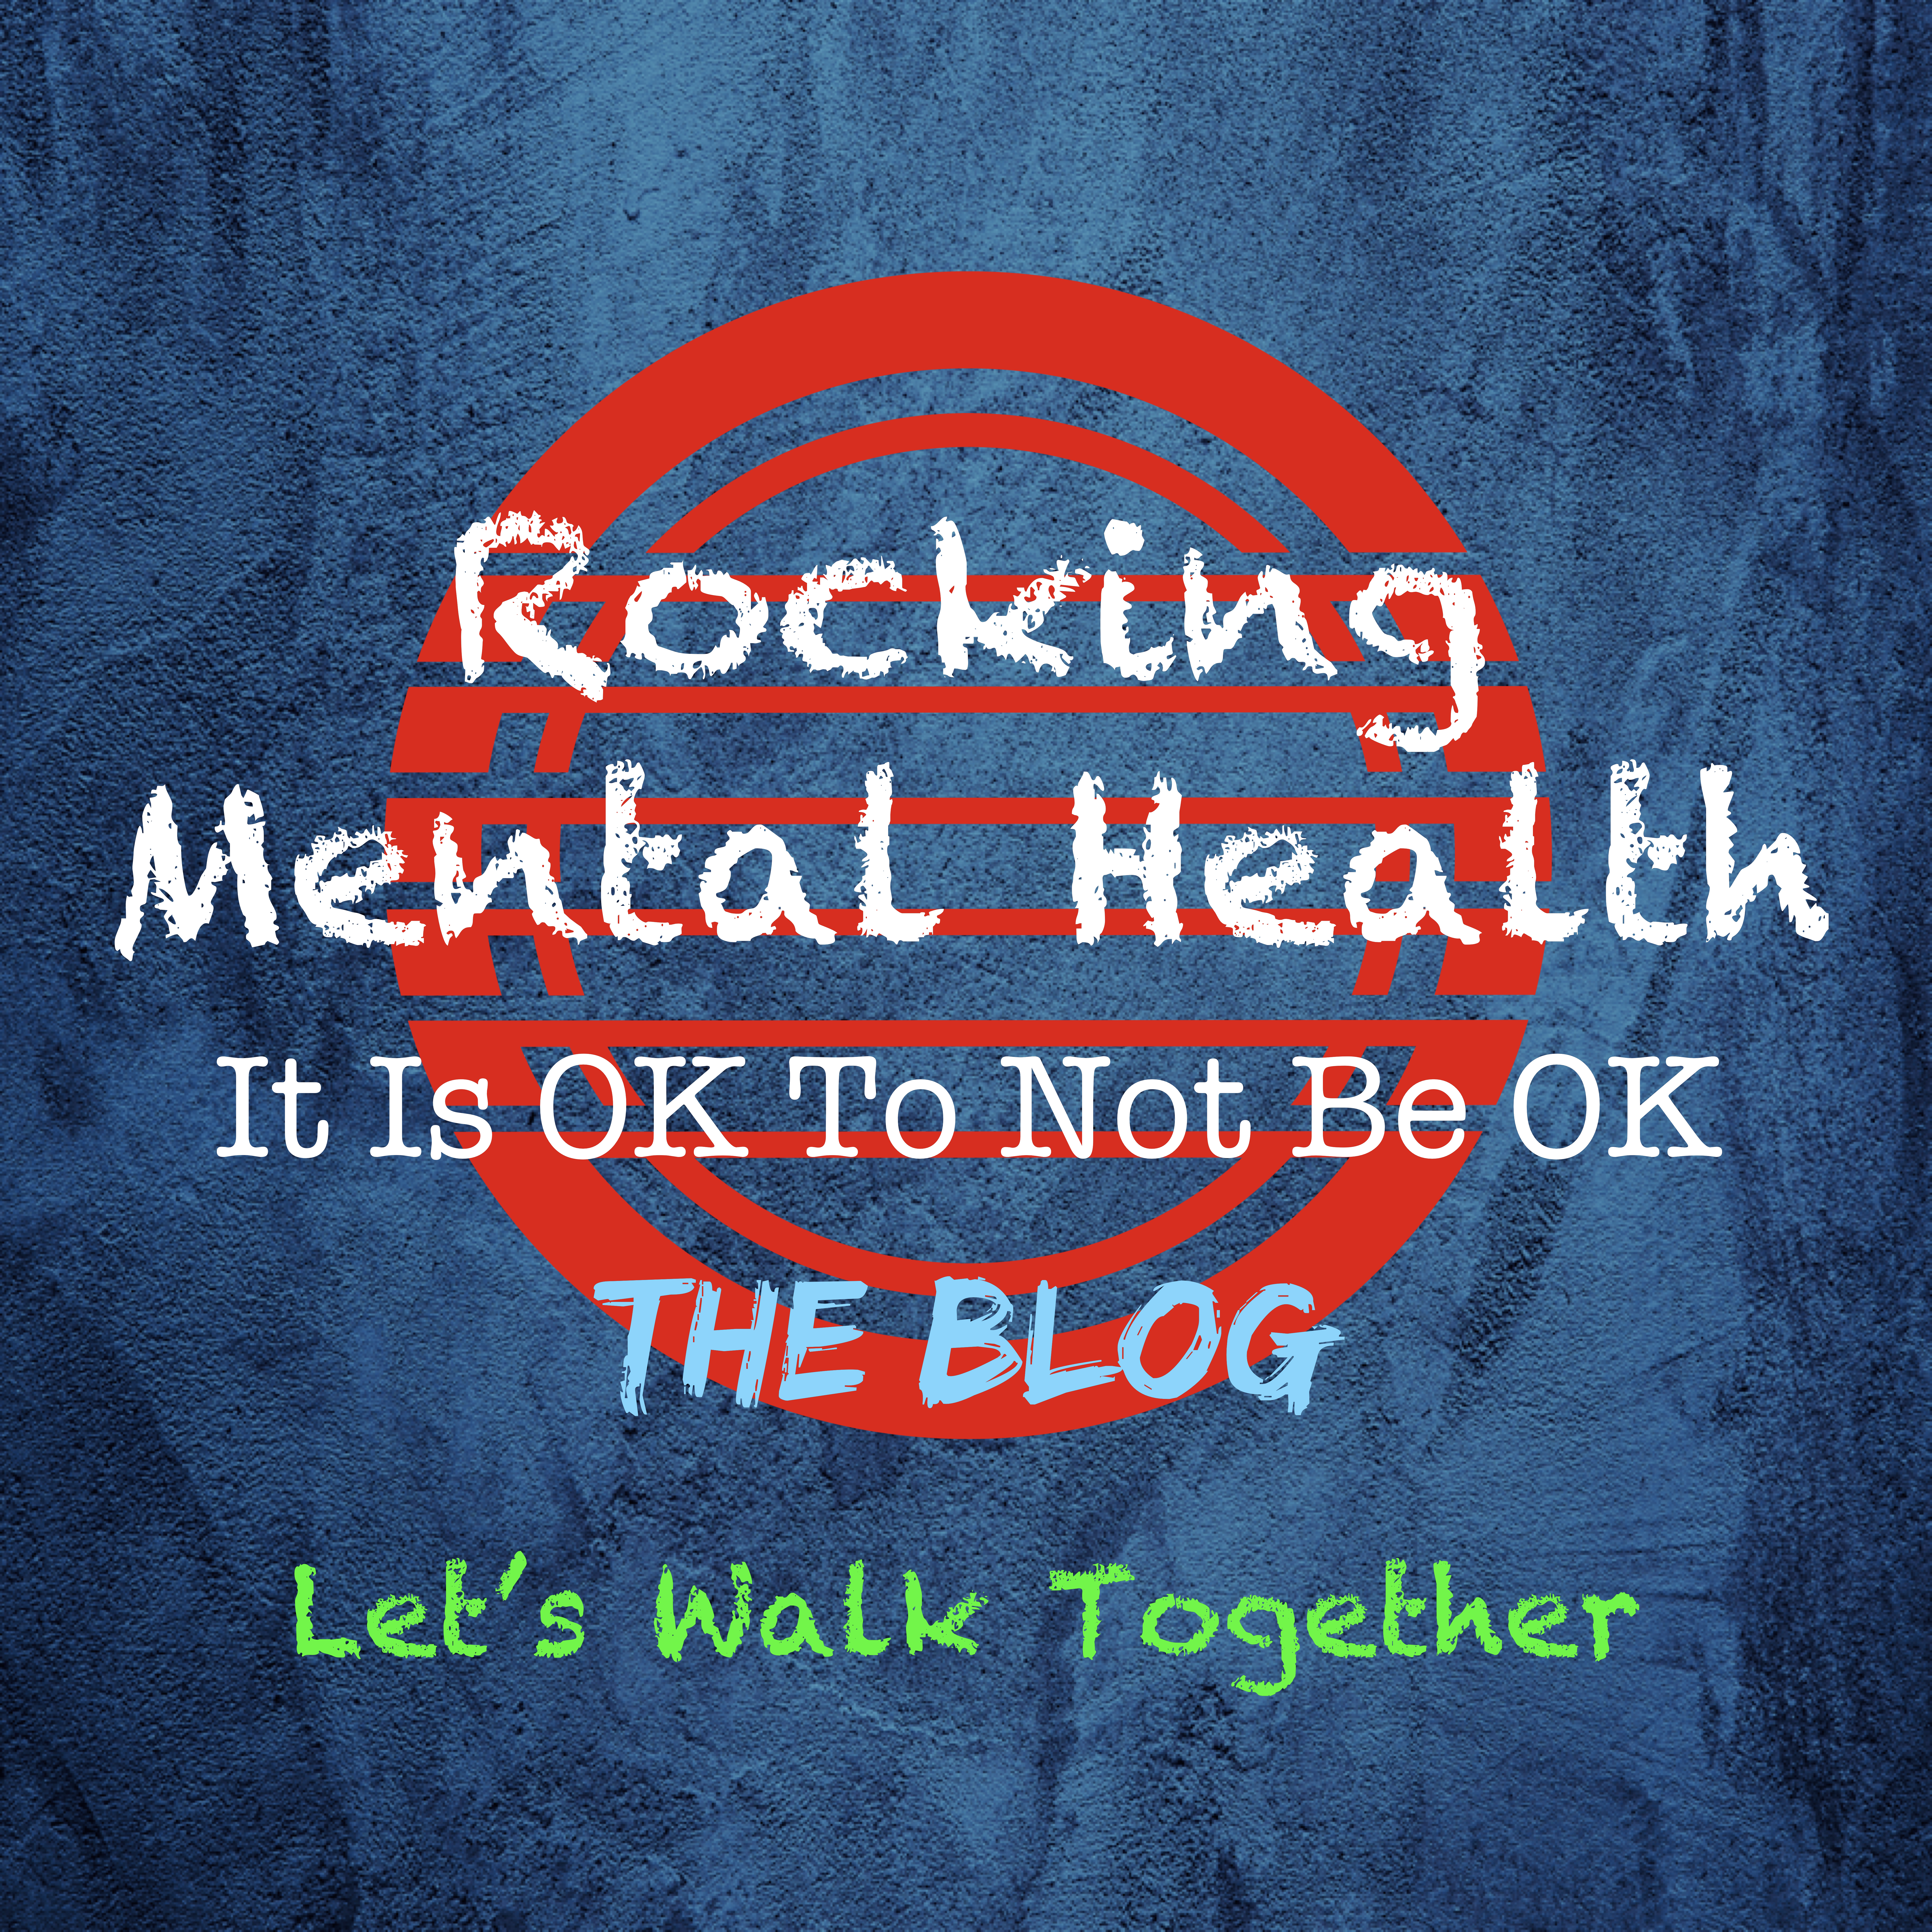 Rocking Mental Health: The Blog- Let's Walk Together